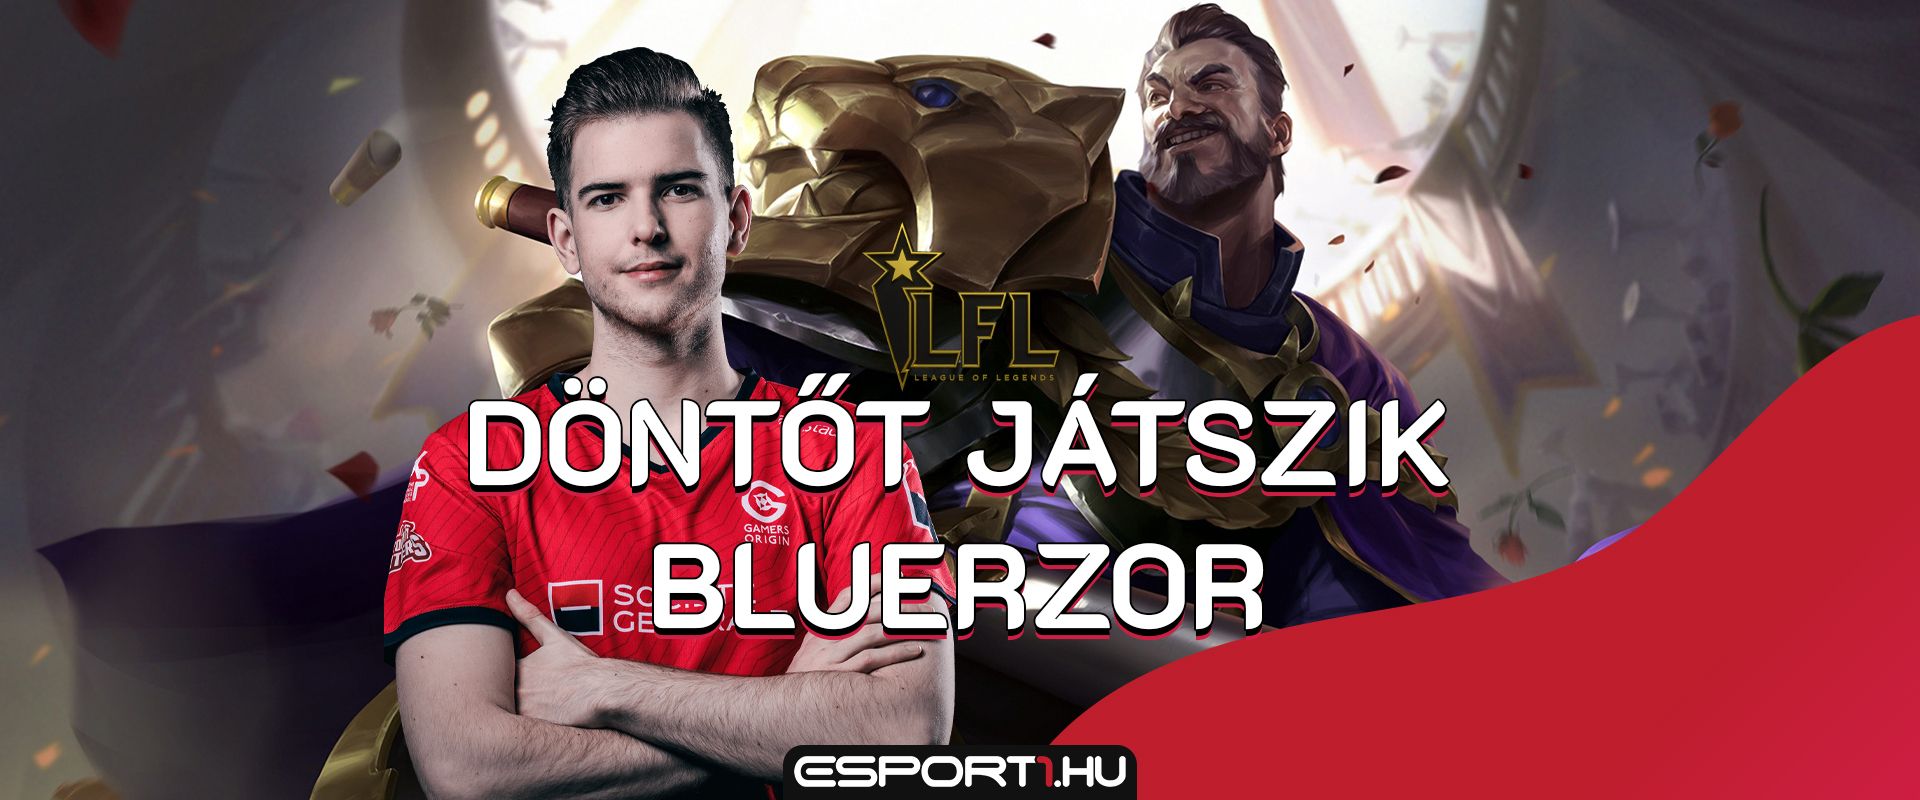 Élőben, magyarul nézheted Bluerzor főszereplésével az LFL nyári döntőjét